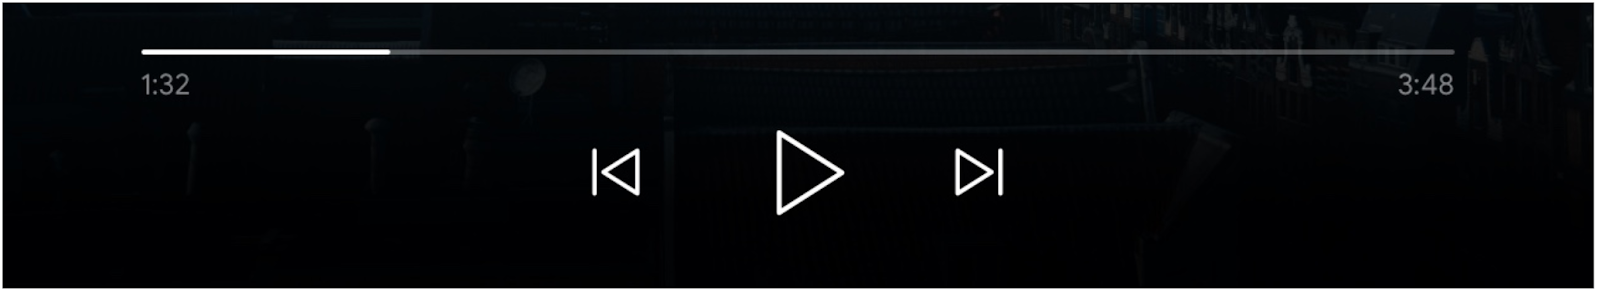 Imagen de los controles del reproductor multimedia: Se agregaron la barra de progreso, el botón “Reproducir” y los botones “Configurar la fila anterior” y “Cola siguiente”